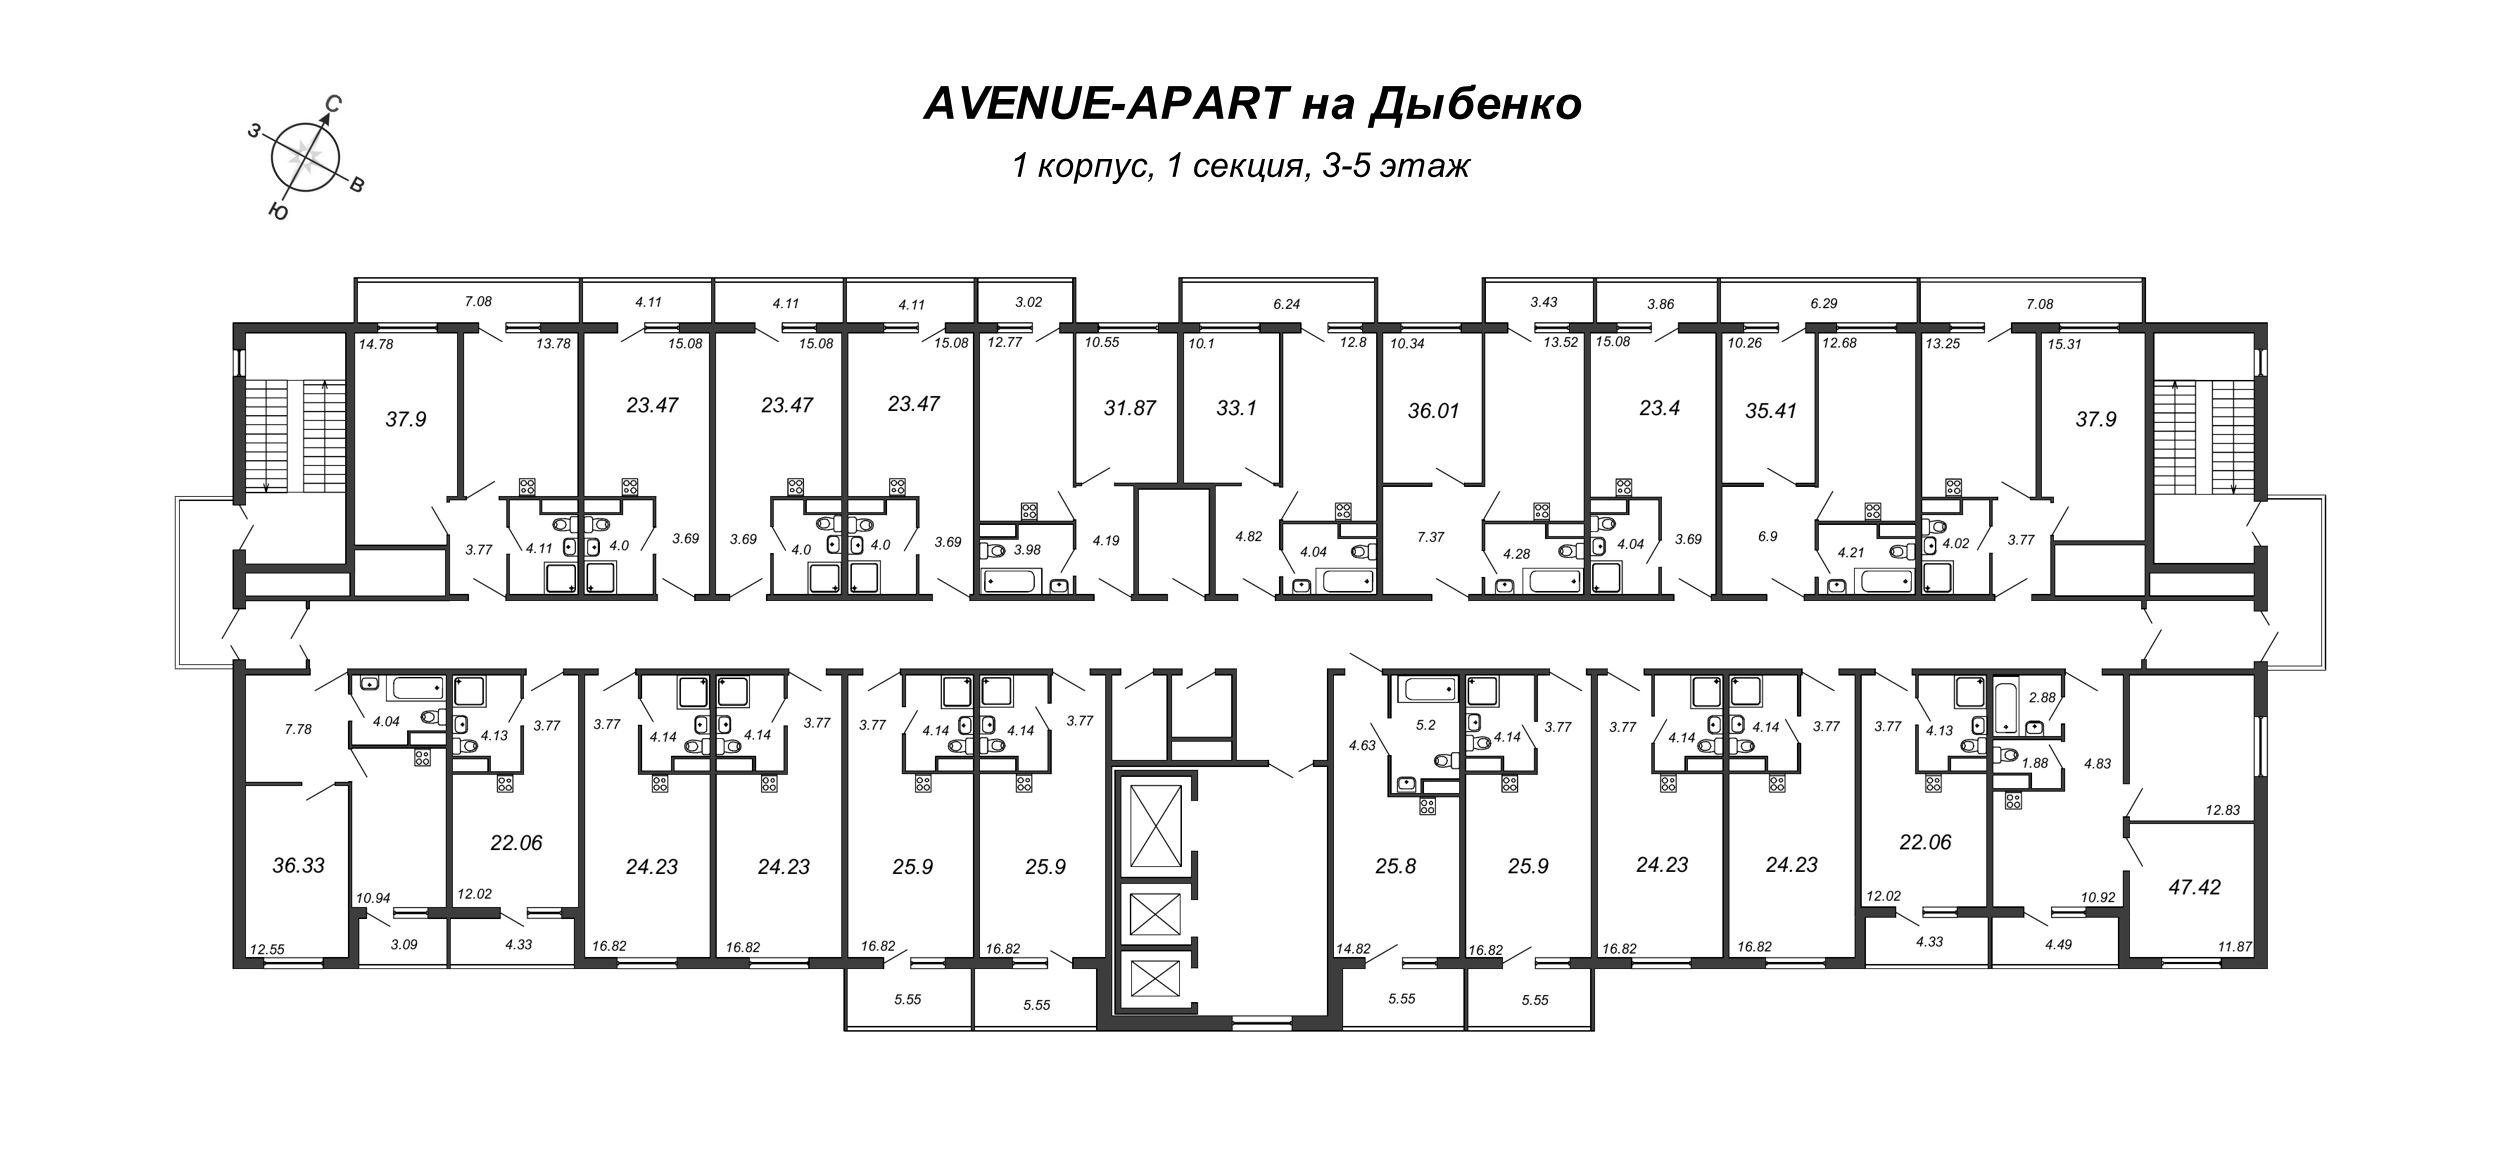 Квартира-студия, 23.97 м² в ЖК "Avenue-Apart на Дыбенко" - планировка этажа